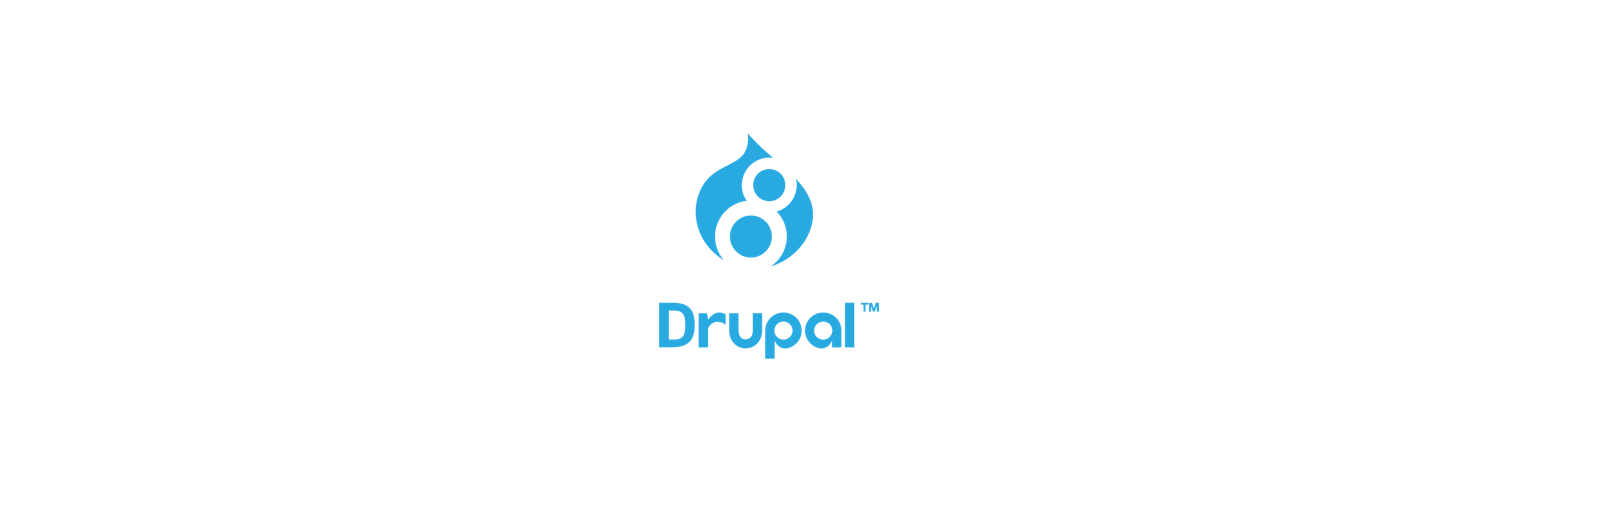 Логотип Drupal 8